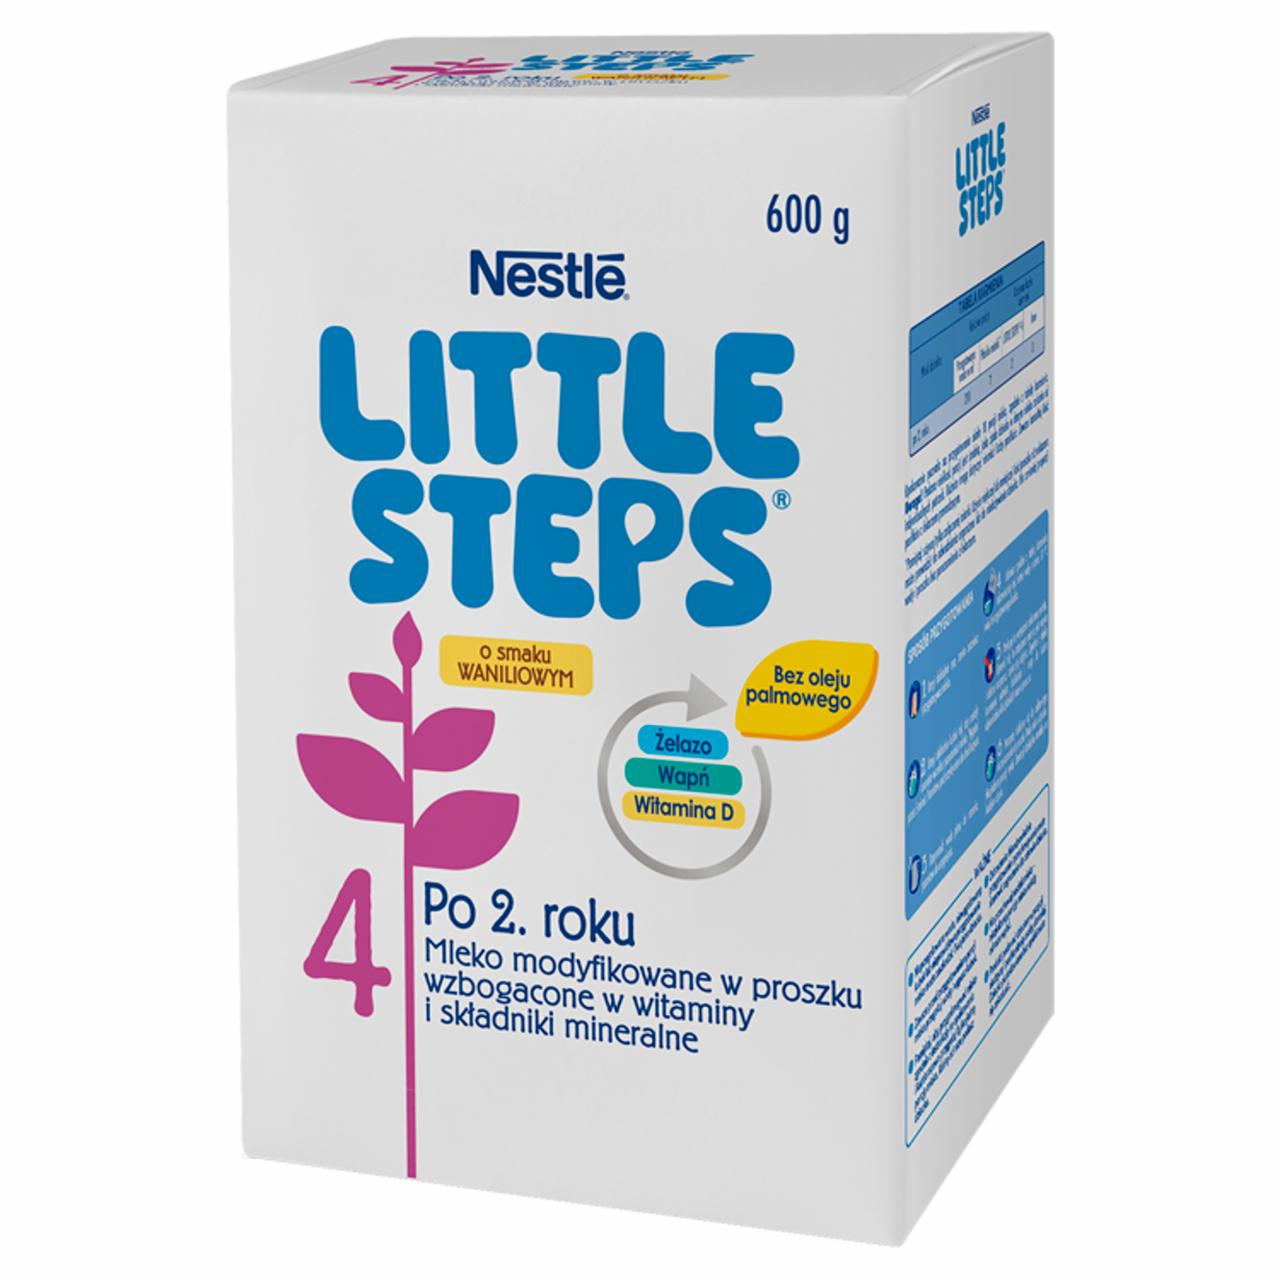 Zdjęcia - LITTLE STEPS 4 Mleko modyfikowane dla dzieci po 2. roku 600 g (2 x 300 g)